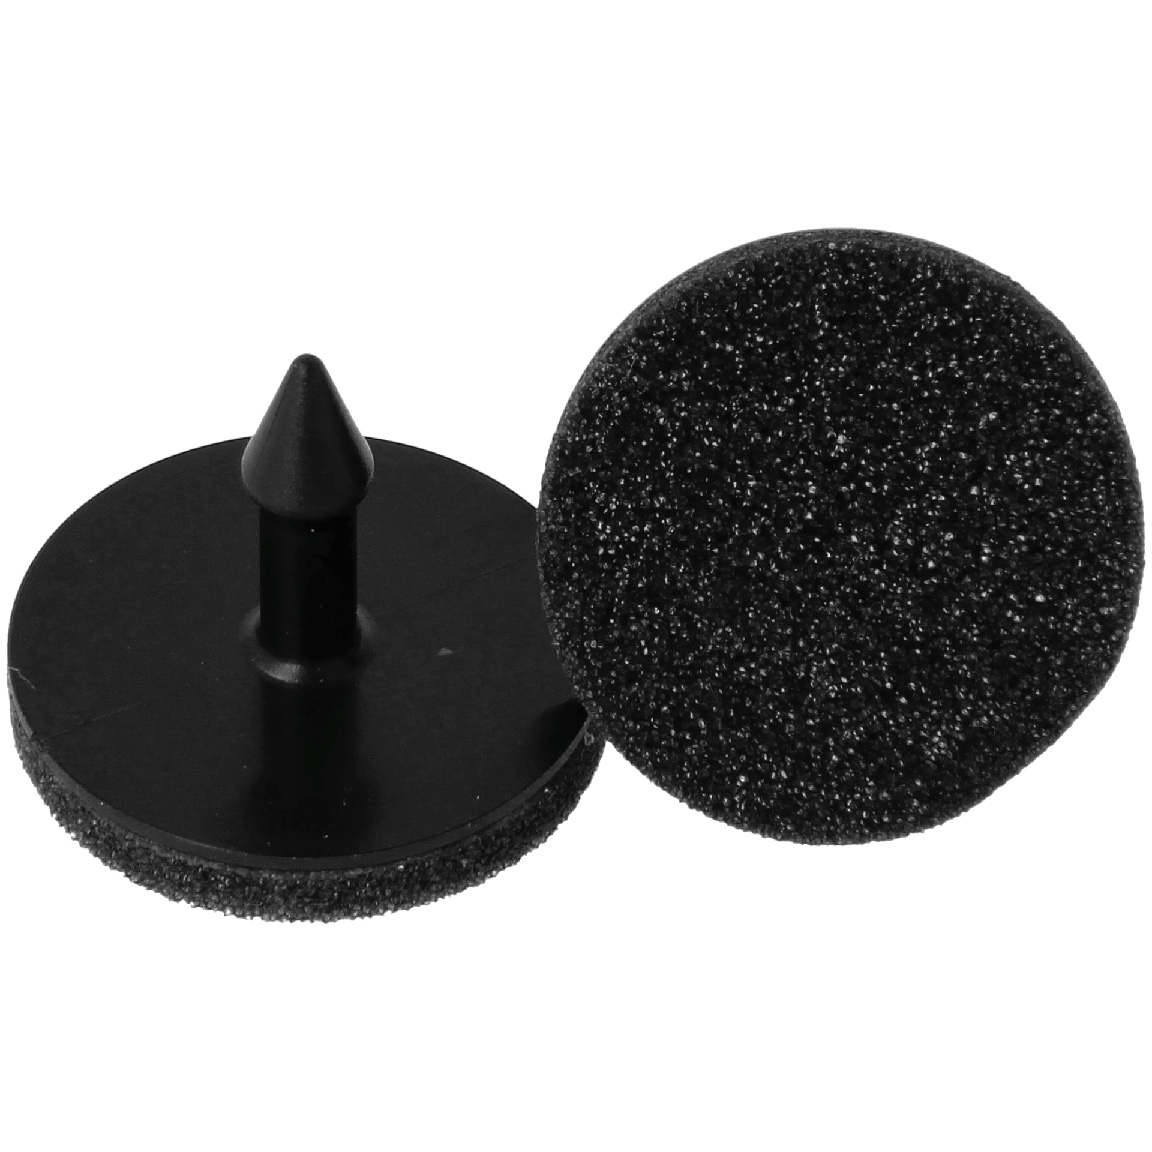 Attachement button for silicon caps 2,5cm